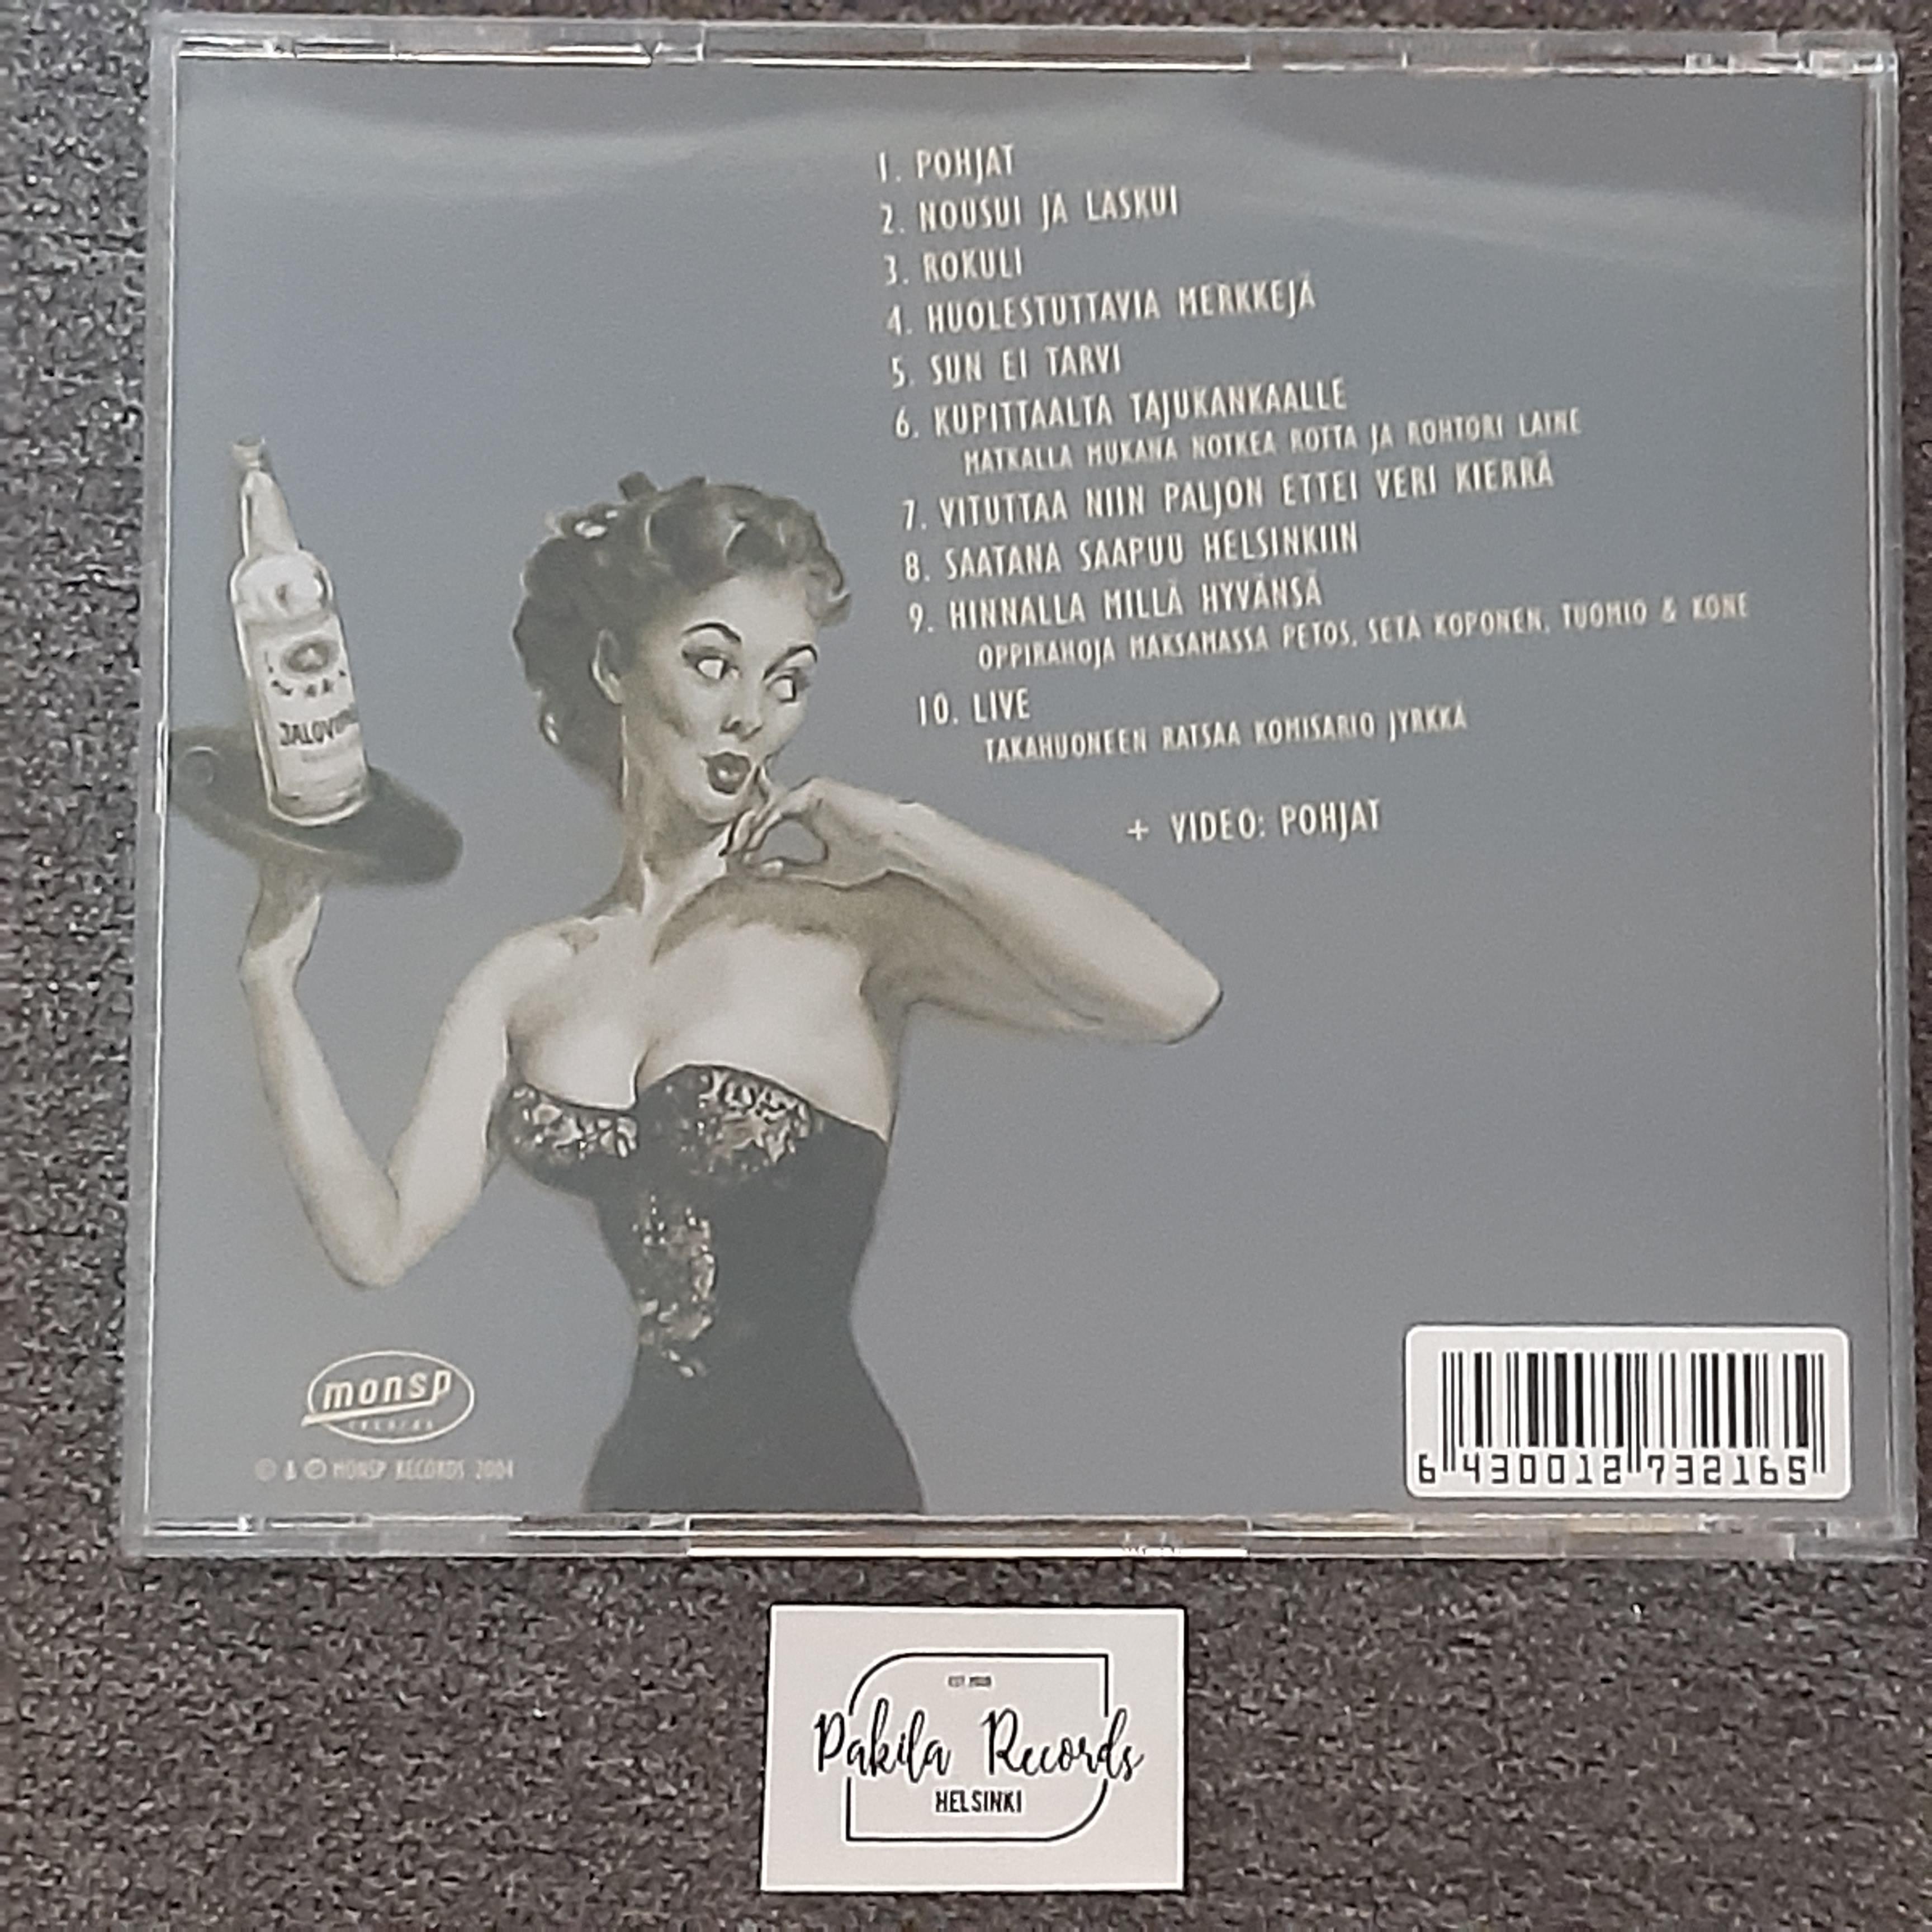 Memmy Posse - Huolestuttavia merkkejä - CD (käytetty)